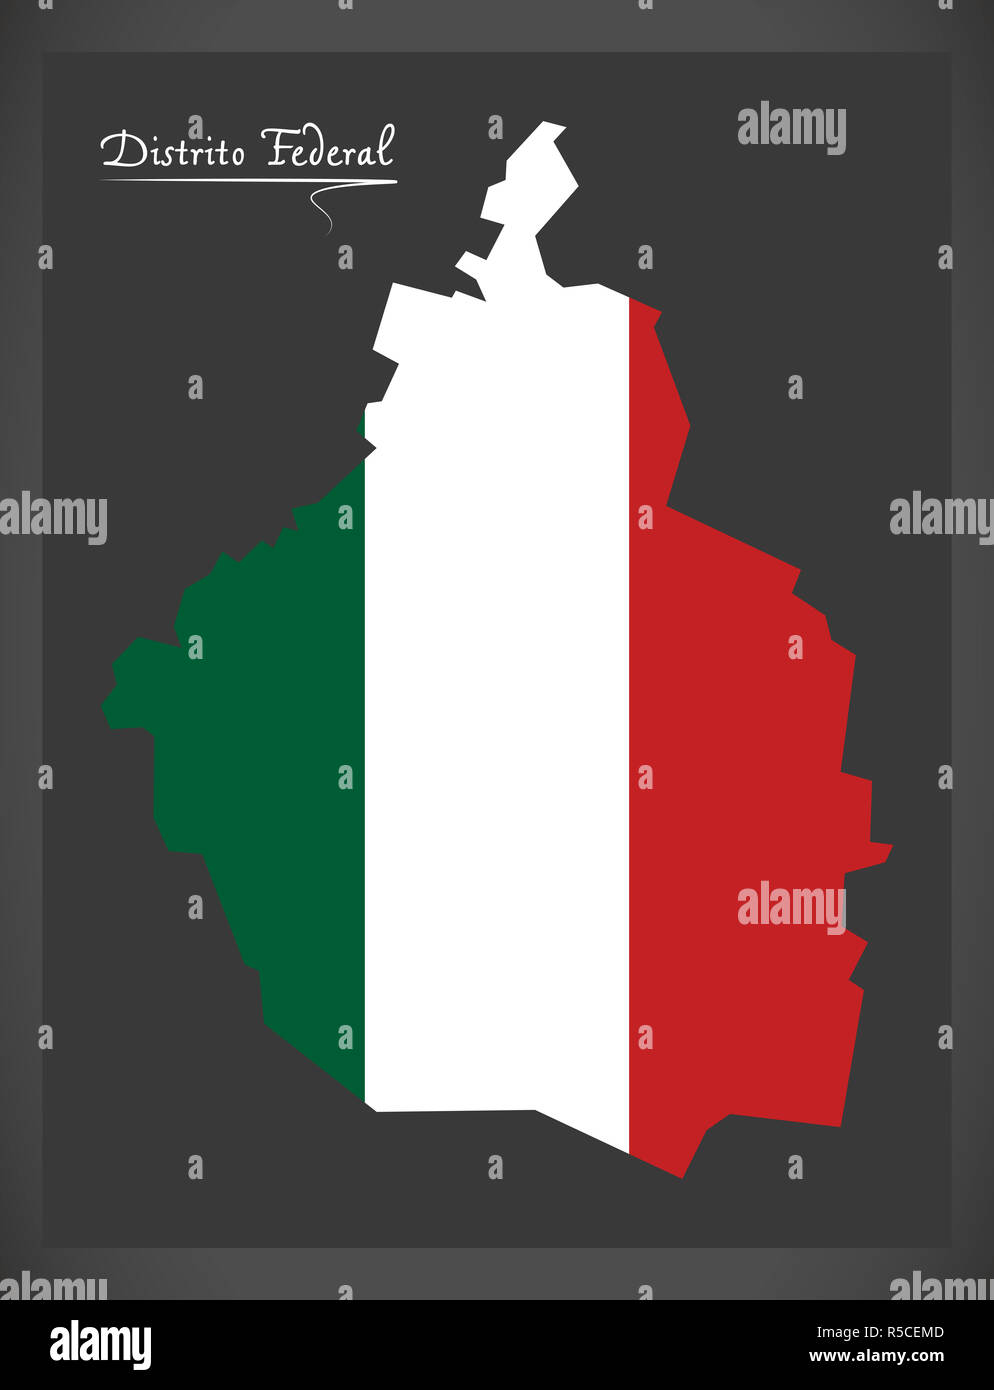 District fédéral plan avec drapeau national mexicain illustration Banque D'Images